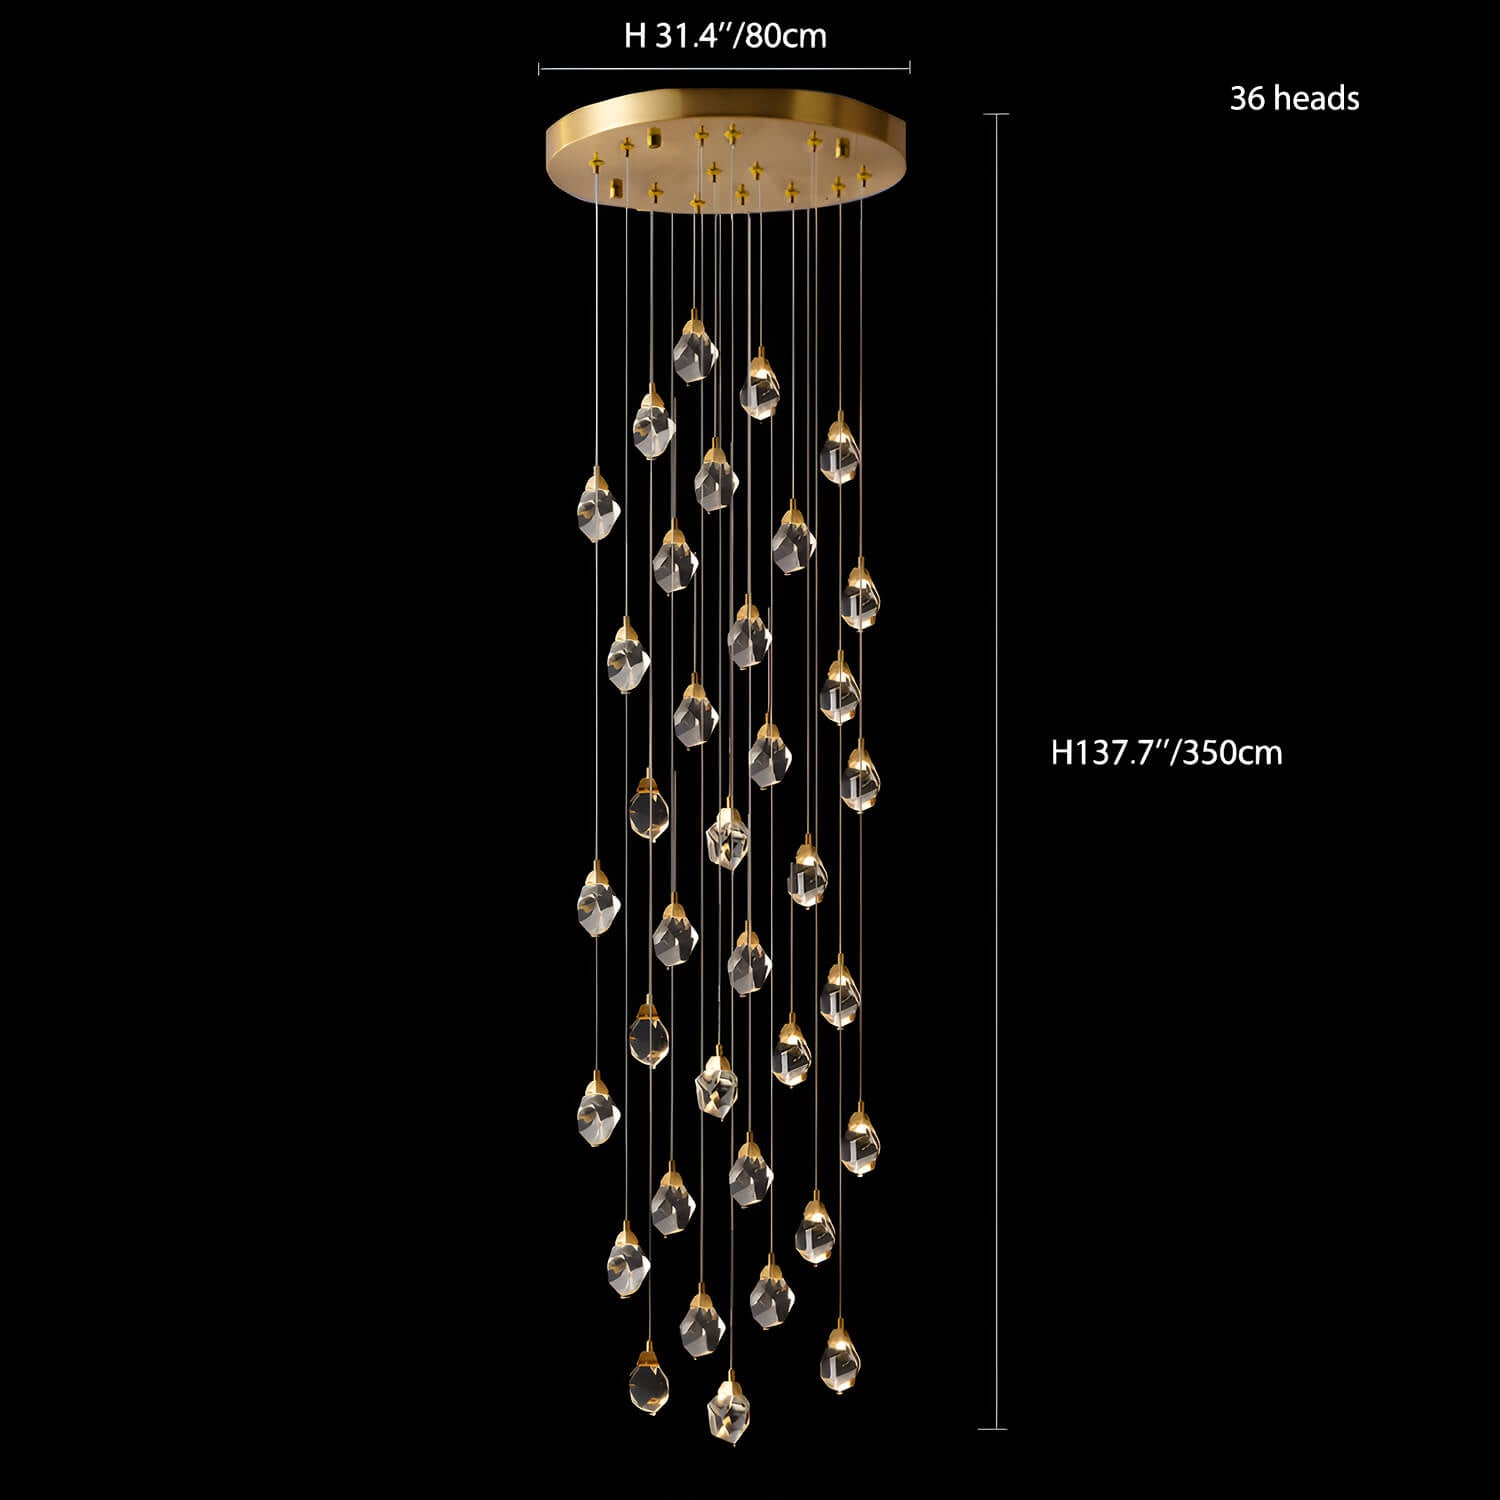 Modern Golden Raindrop Crystal Chandeliers for High Ceilings in Foyer & Living Room 6 | Sofary Lighting